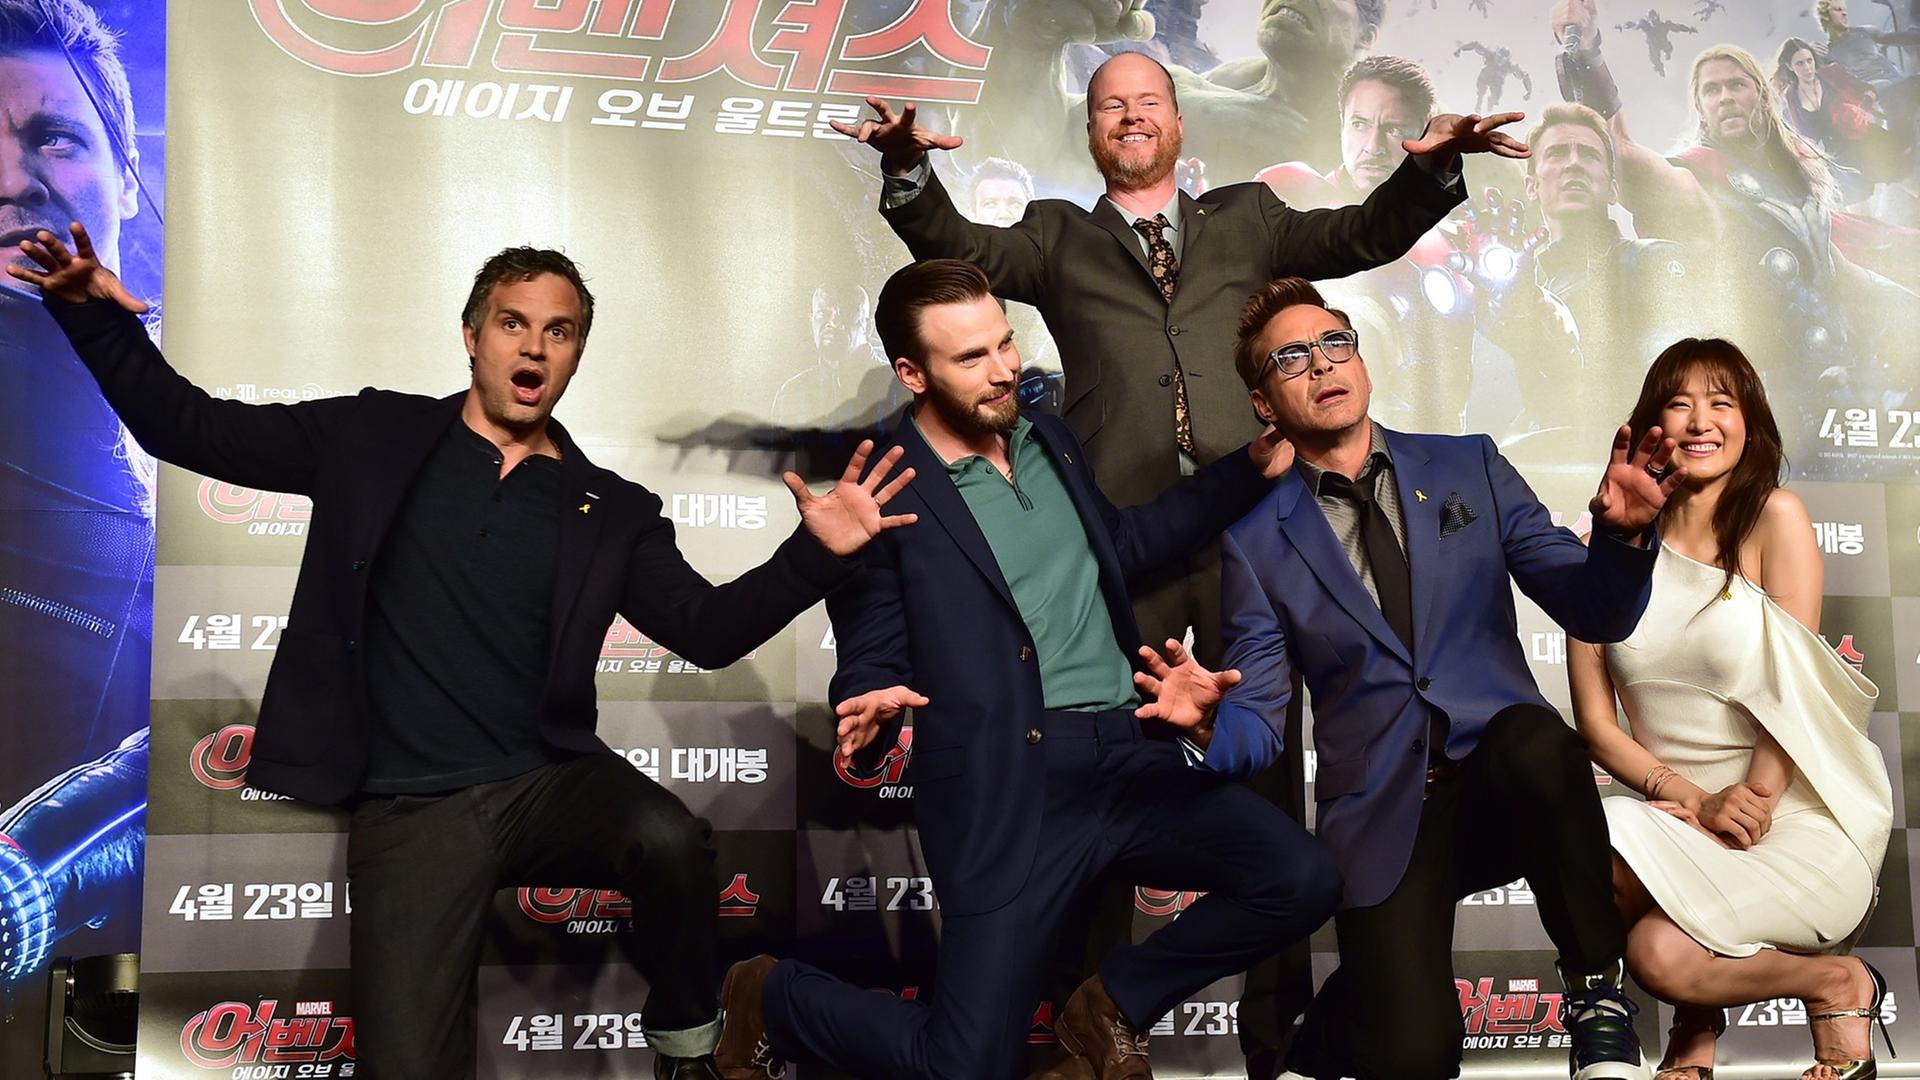 Die Schauspieler Mark Ruffalo, Chris Evans, Robert Downey Jr. und Kim Soo-Hyun sowie Regisseur Joss Whedon posieren vor einem Filmplakat von "Avengers: Age of Ultron"